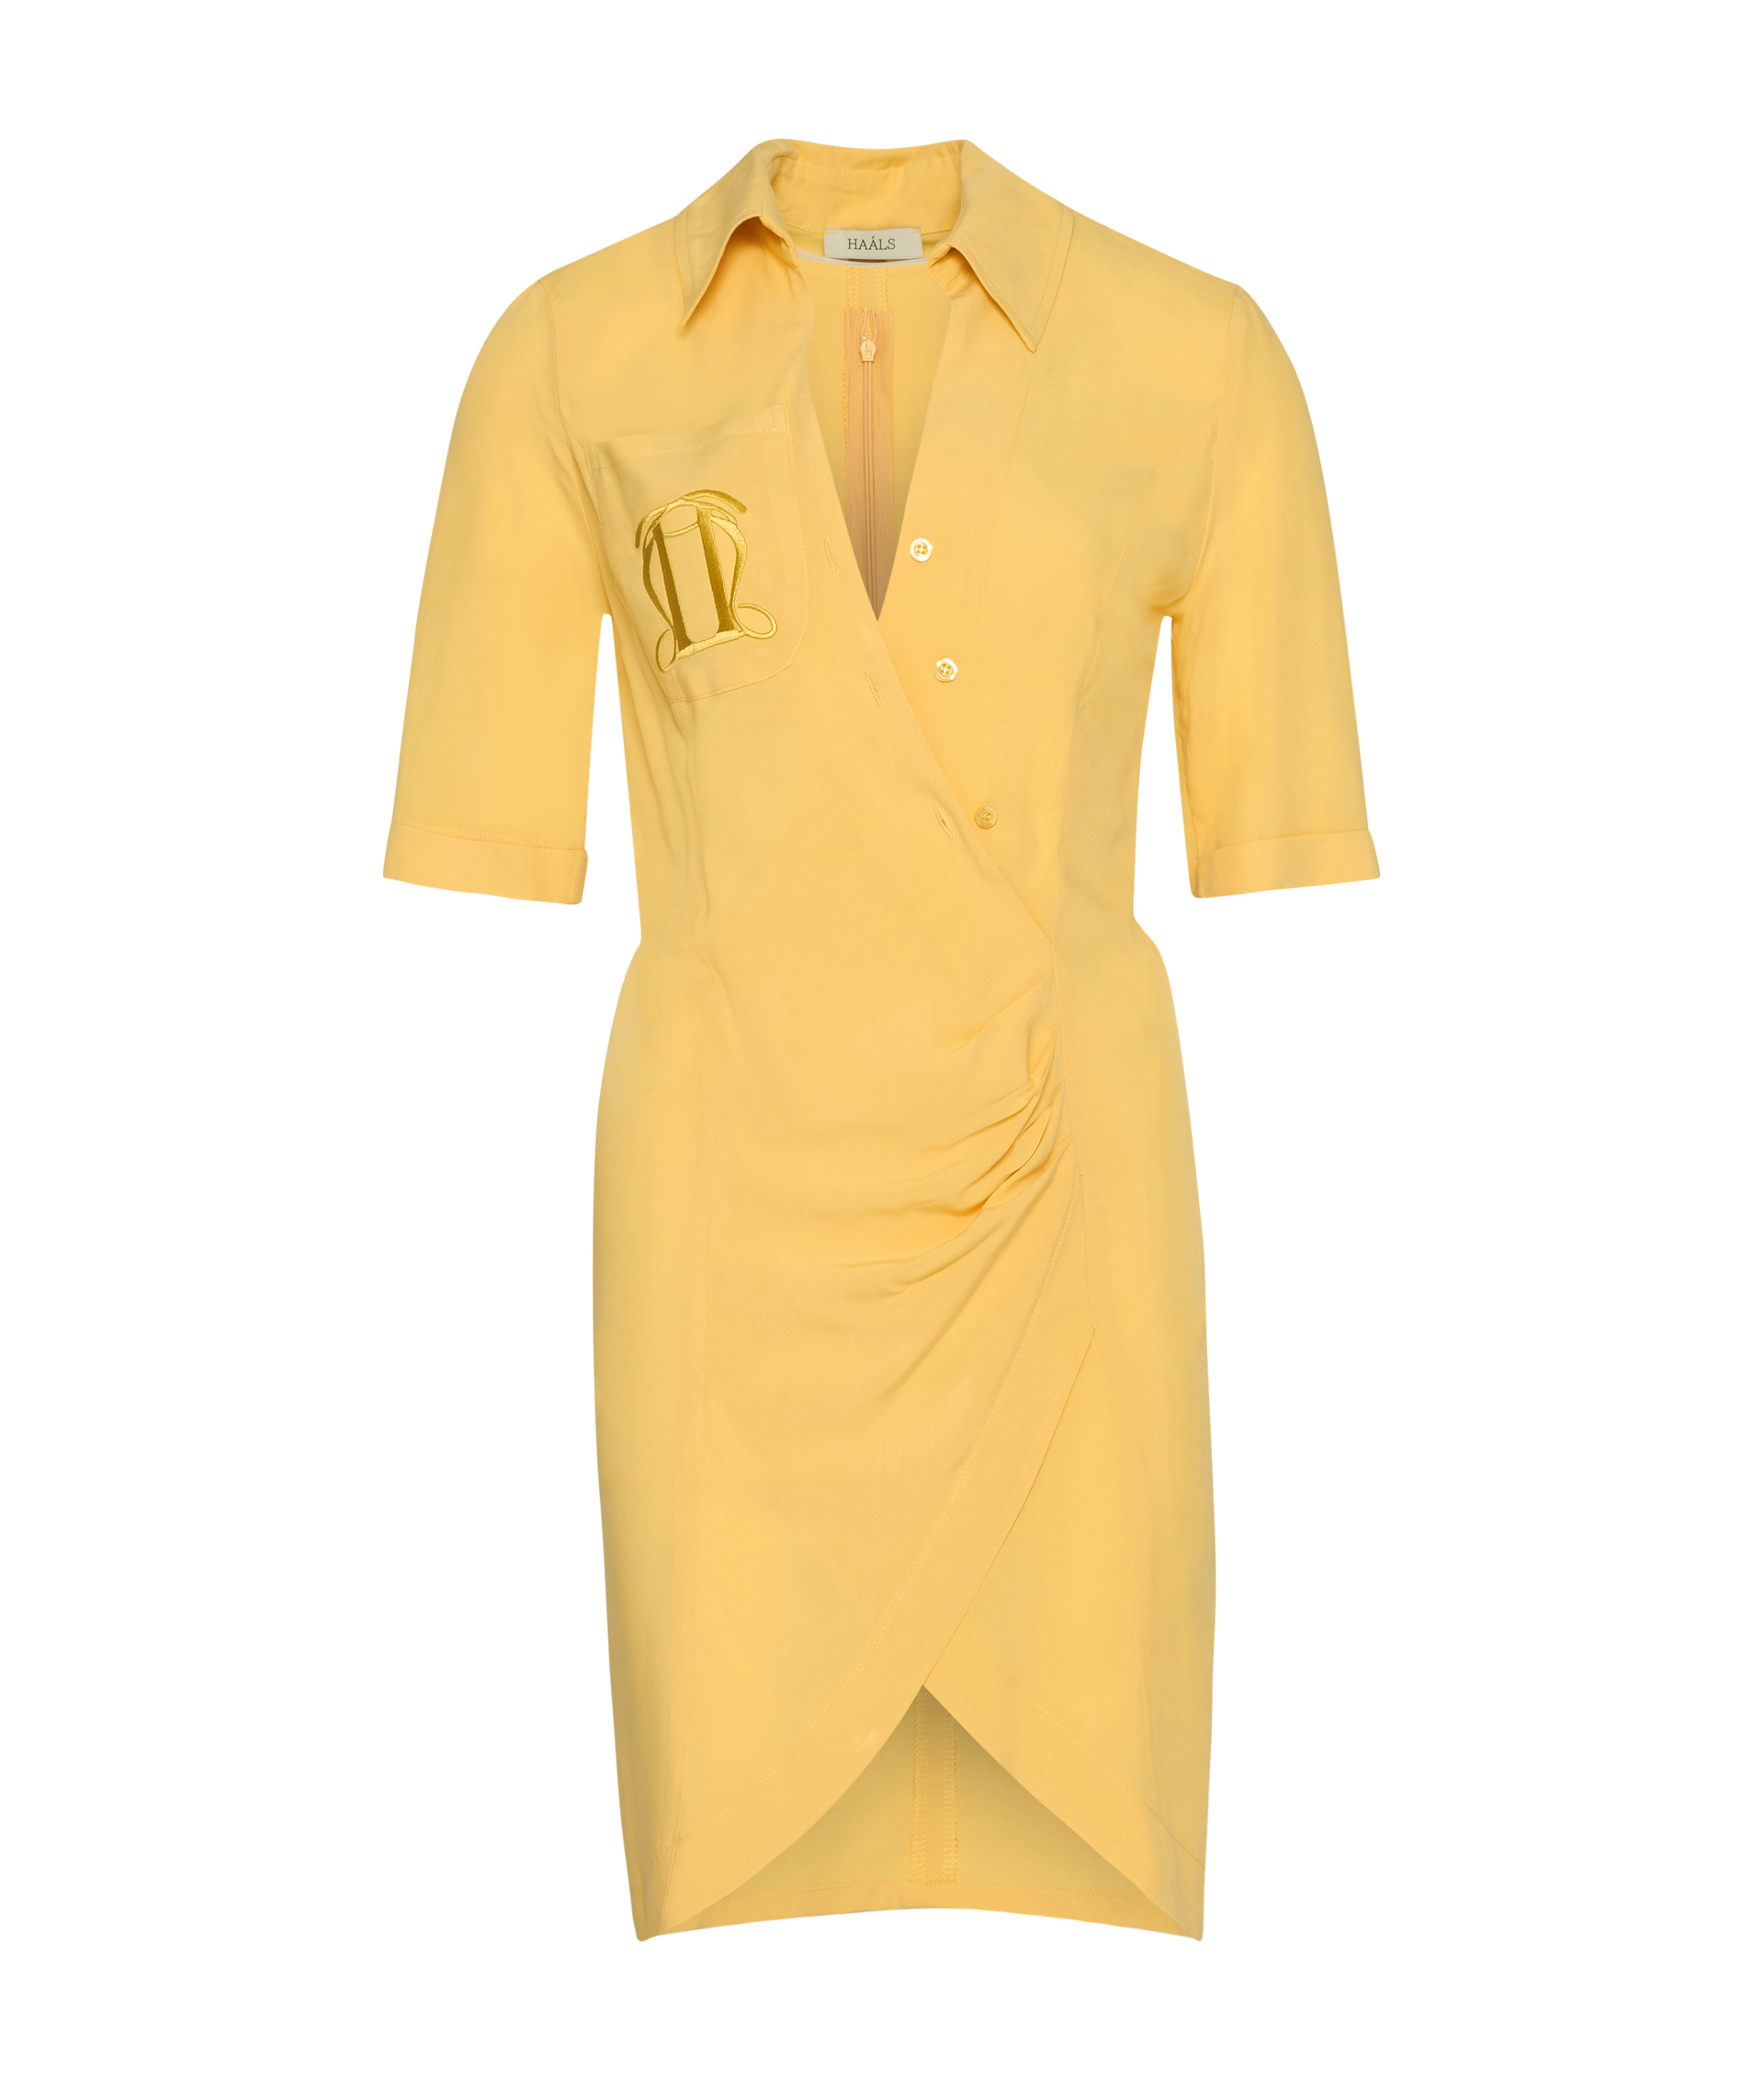 Irene Baby Yellow Dress